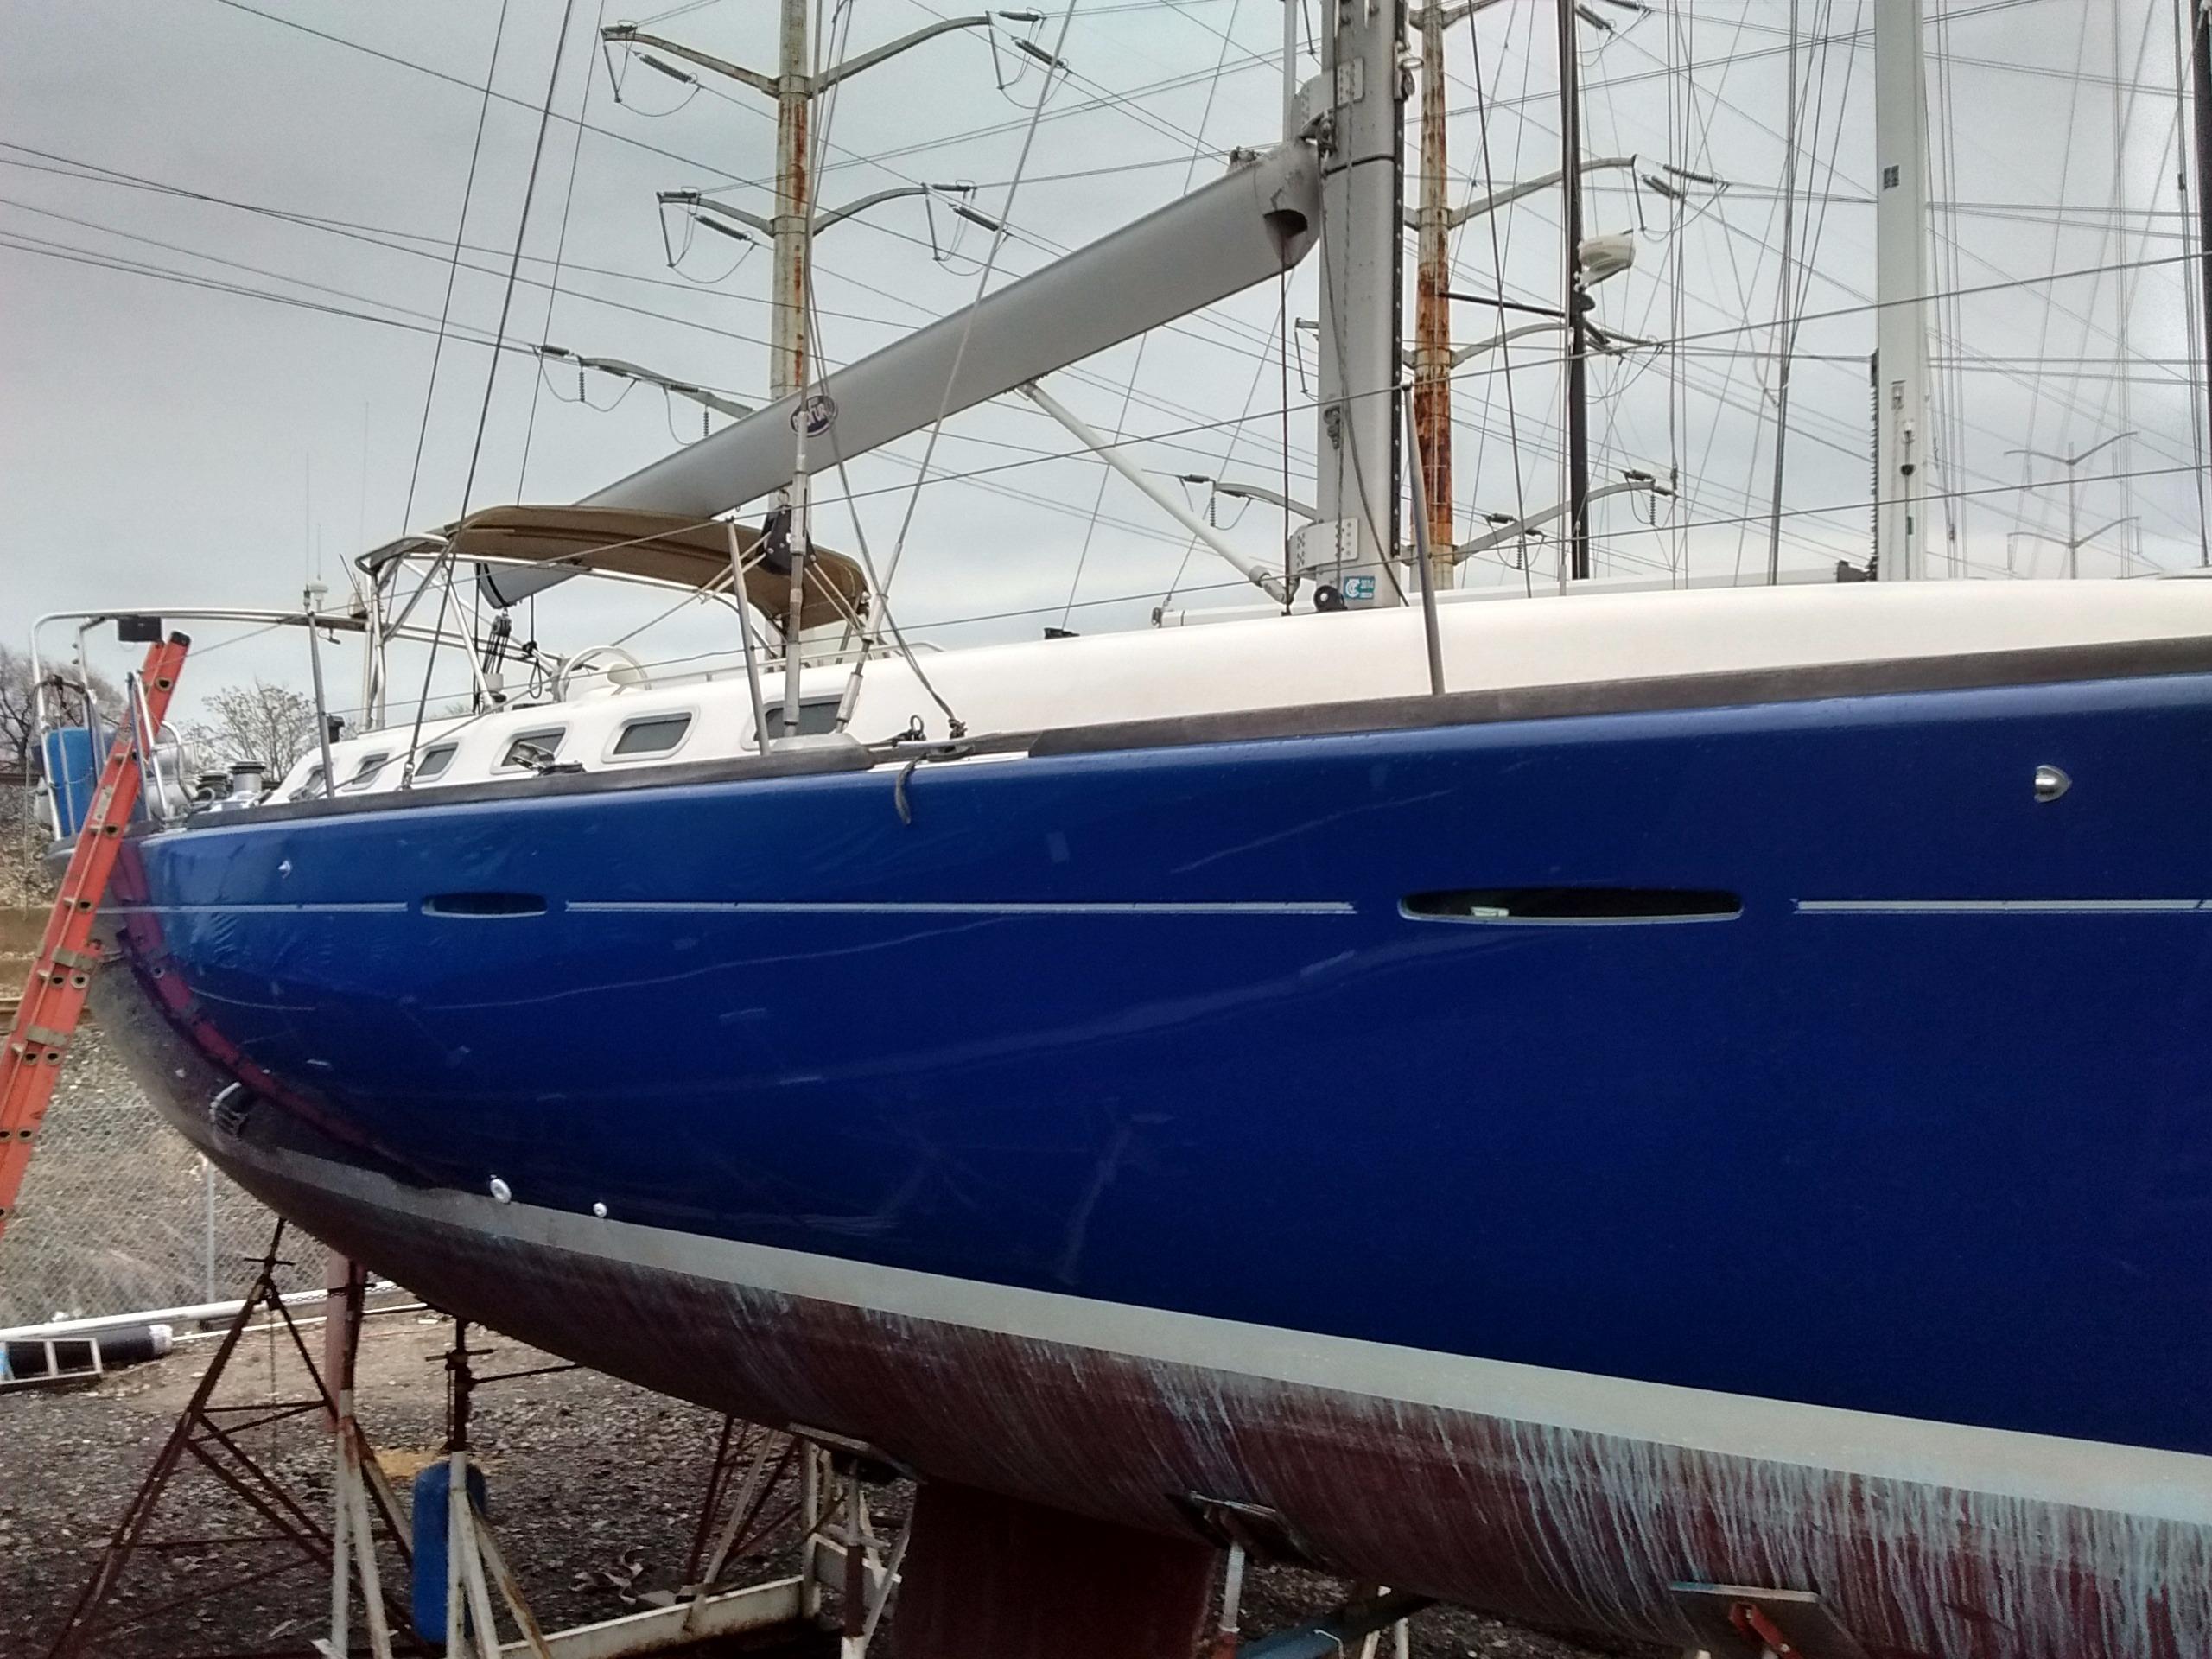 beneteau 47 sailboat for sale